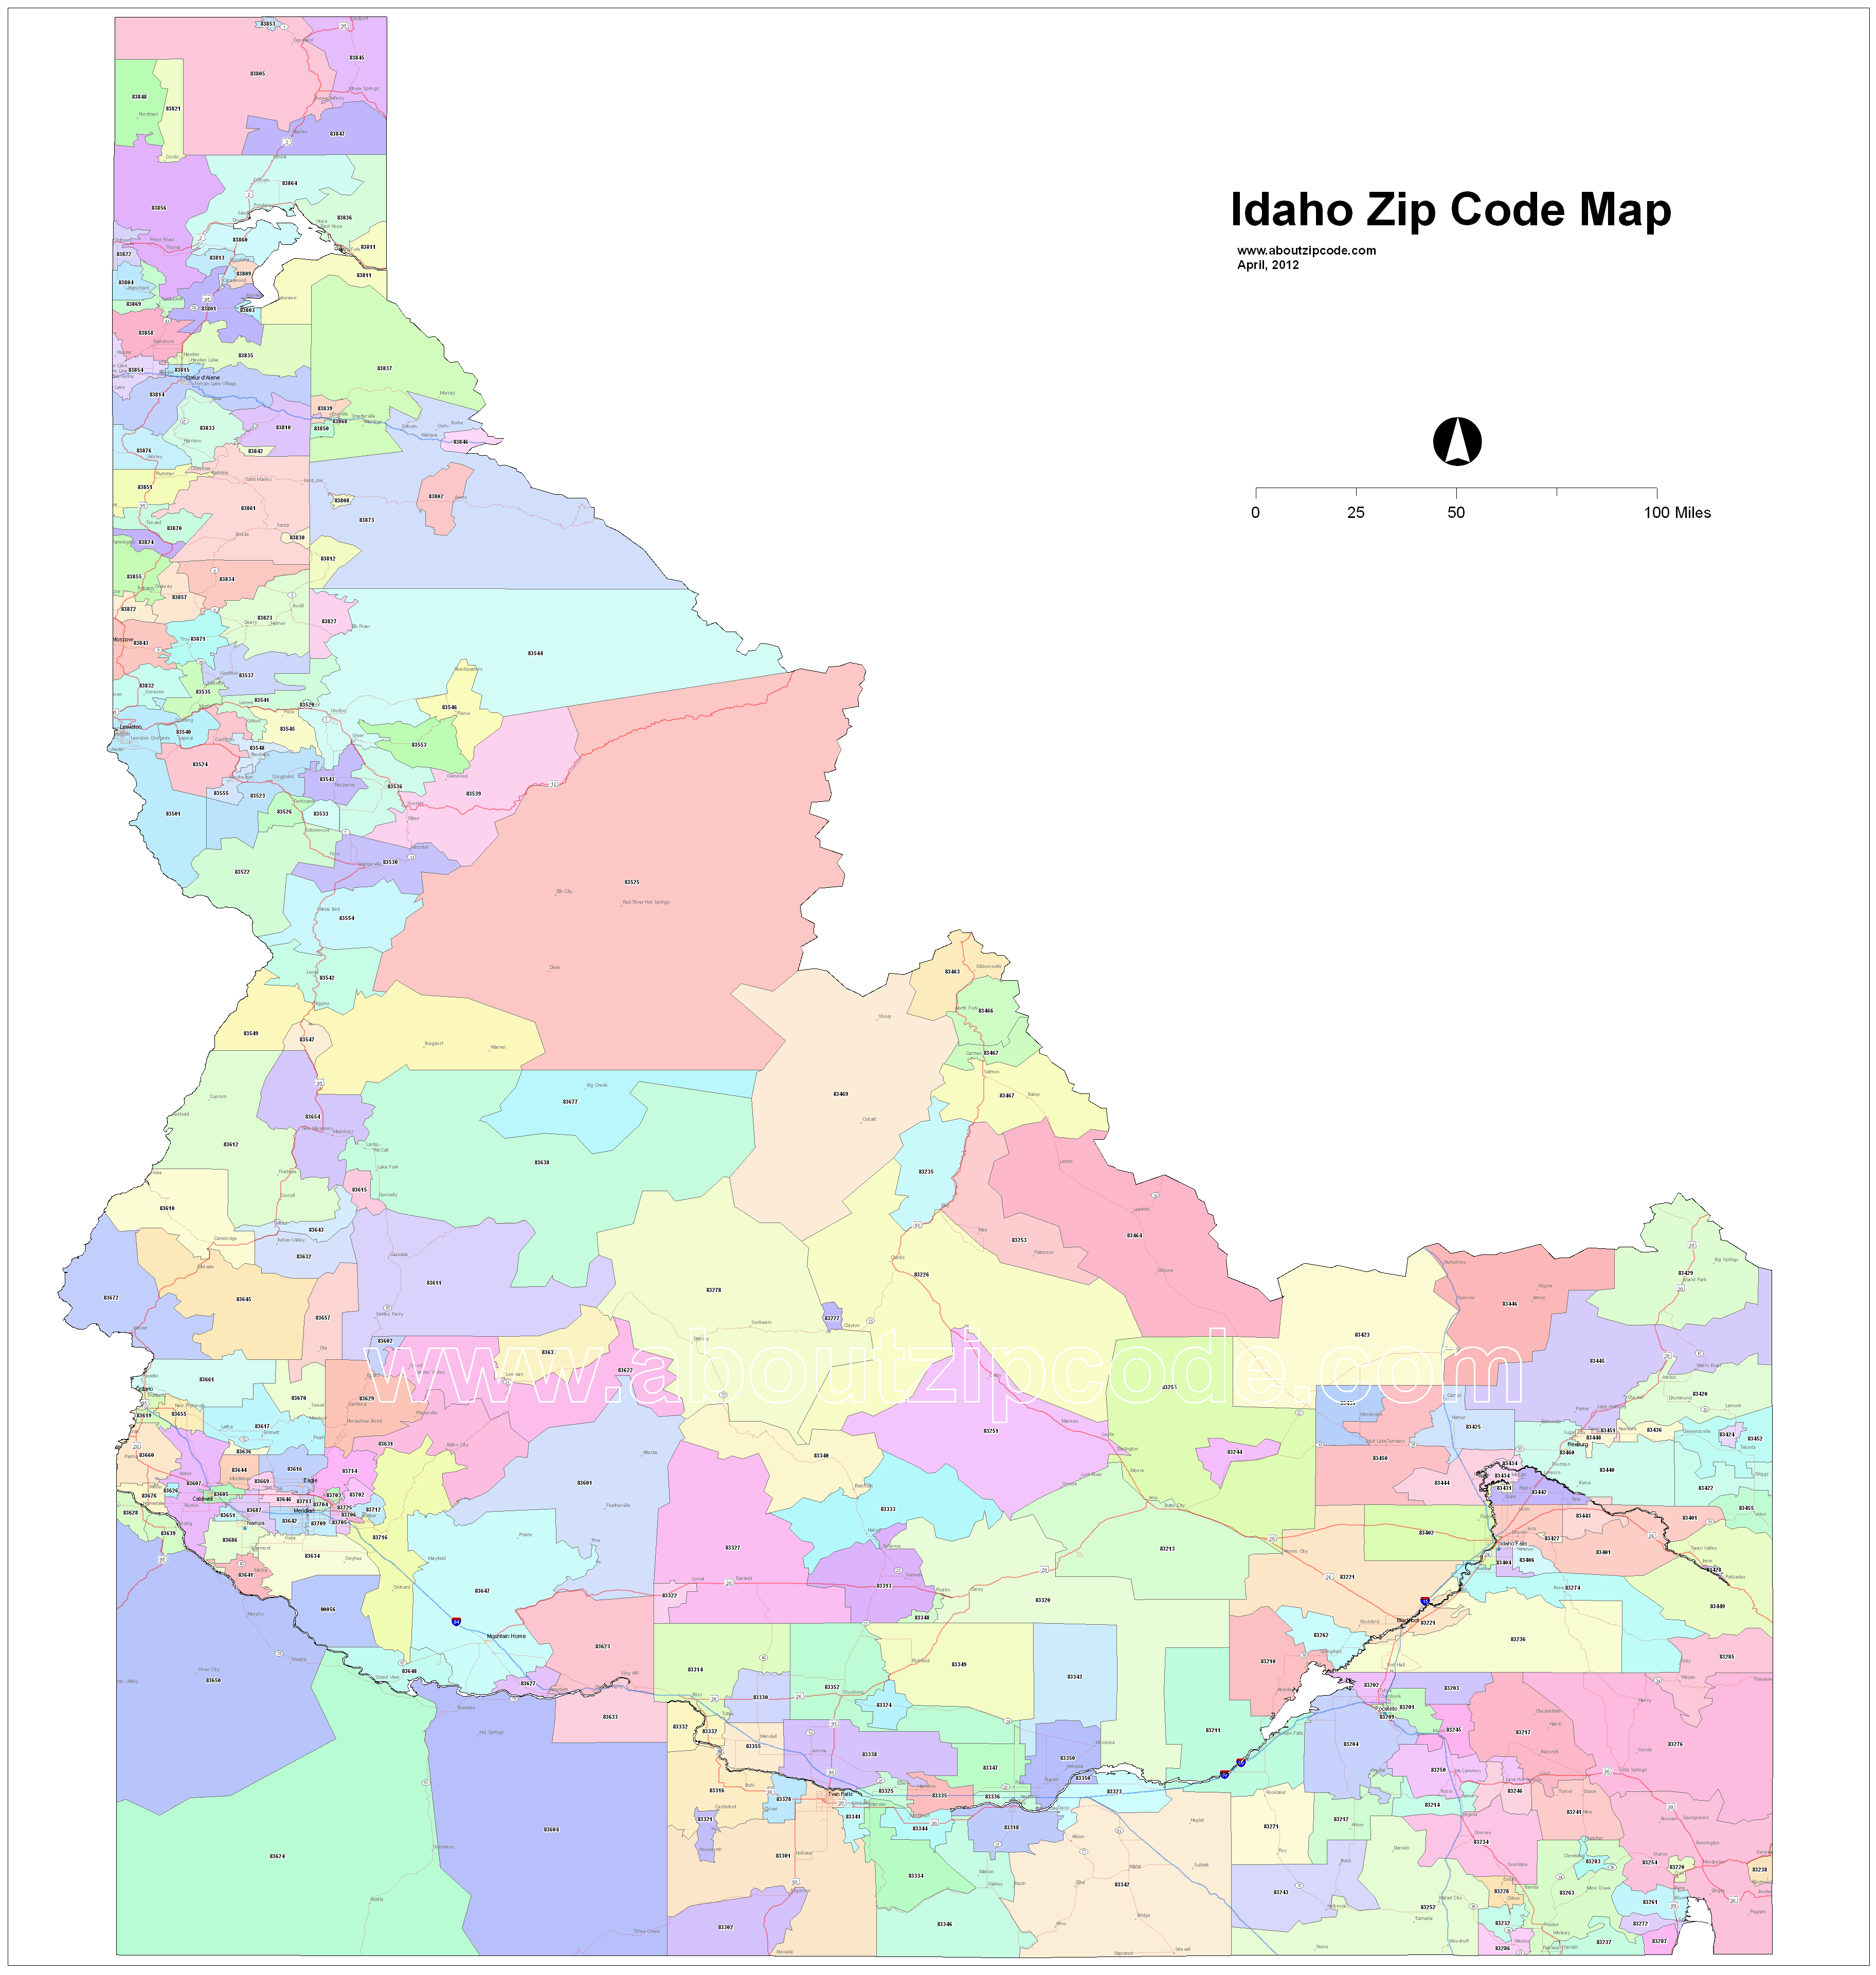 Idaho Zip Code Maps Free Idaho Zip Code Maps